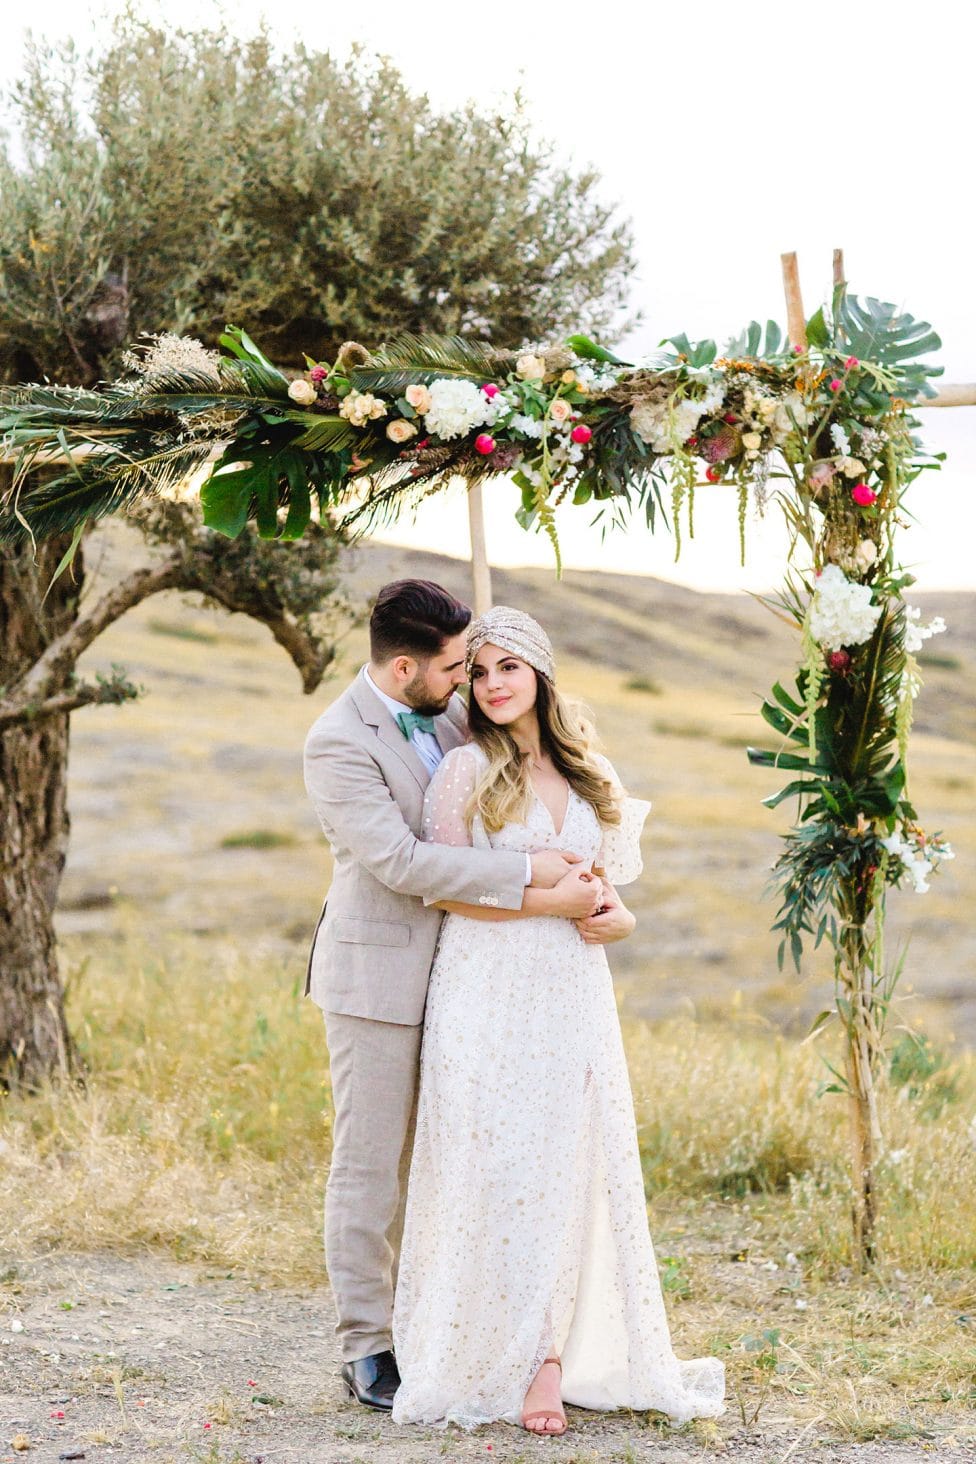 Hochzeitswahn - Ein Paar umarmt sich liebevoll unter einem floralen Hochzeitsbogen in einer ruhigen Umgebung im Freien und präsentiert seine Hochzeitskleidung im Bohème-Stil vor dem Hintergrund sanfter Wildnis.